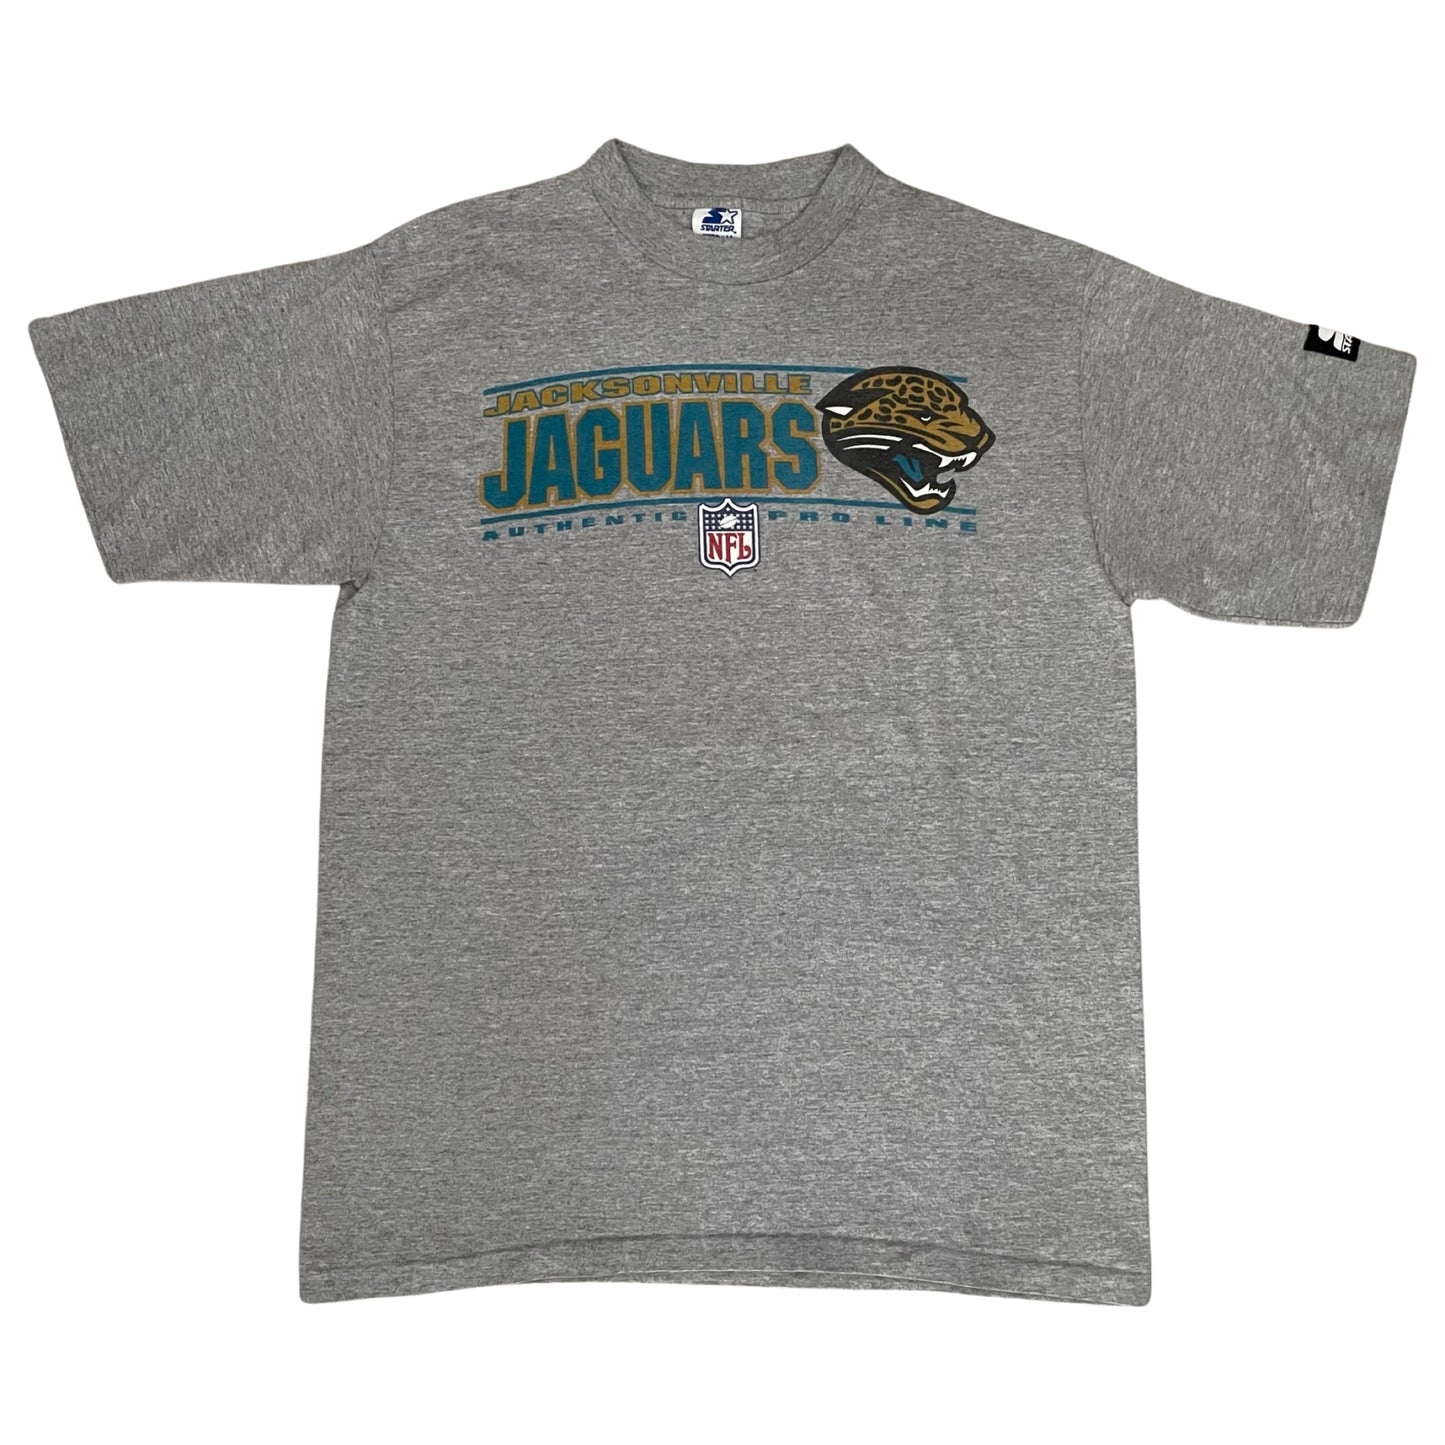 Jacksonville Jaguars Starter shirt size LARGE